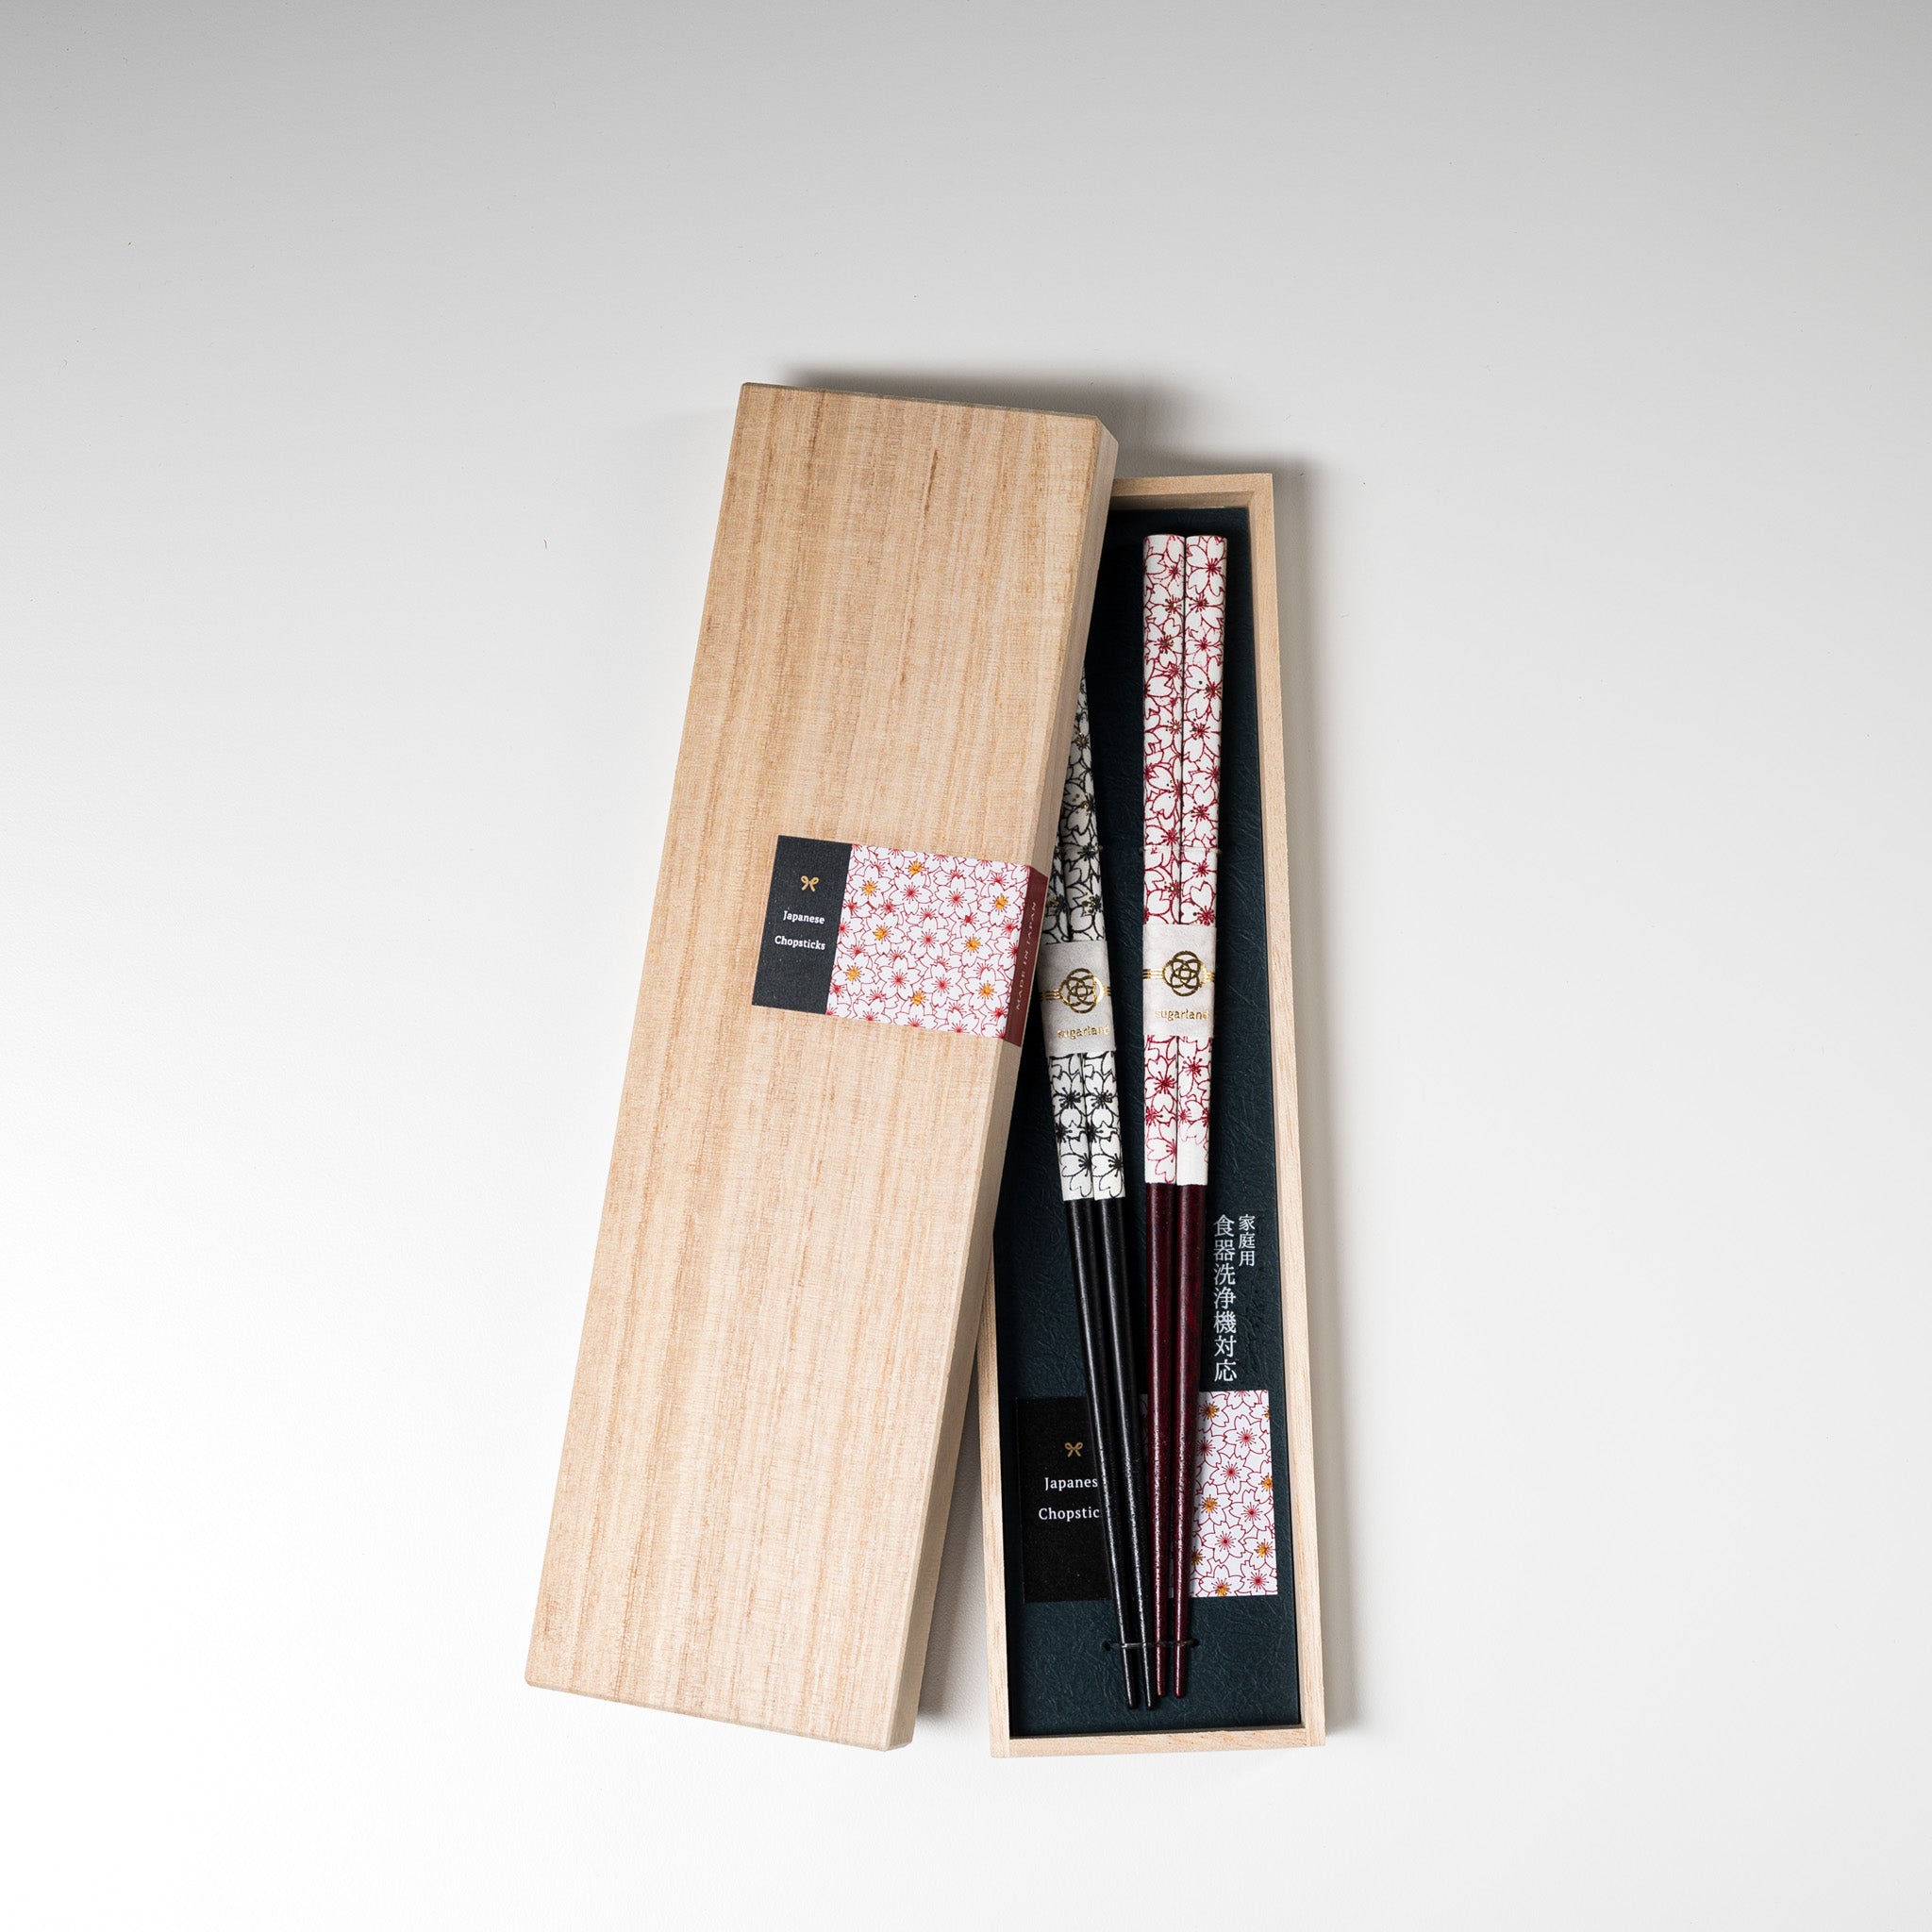 Japanese Chopstick Gift Set - Full Bloom